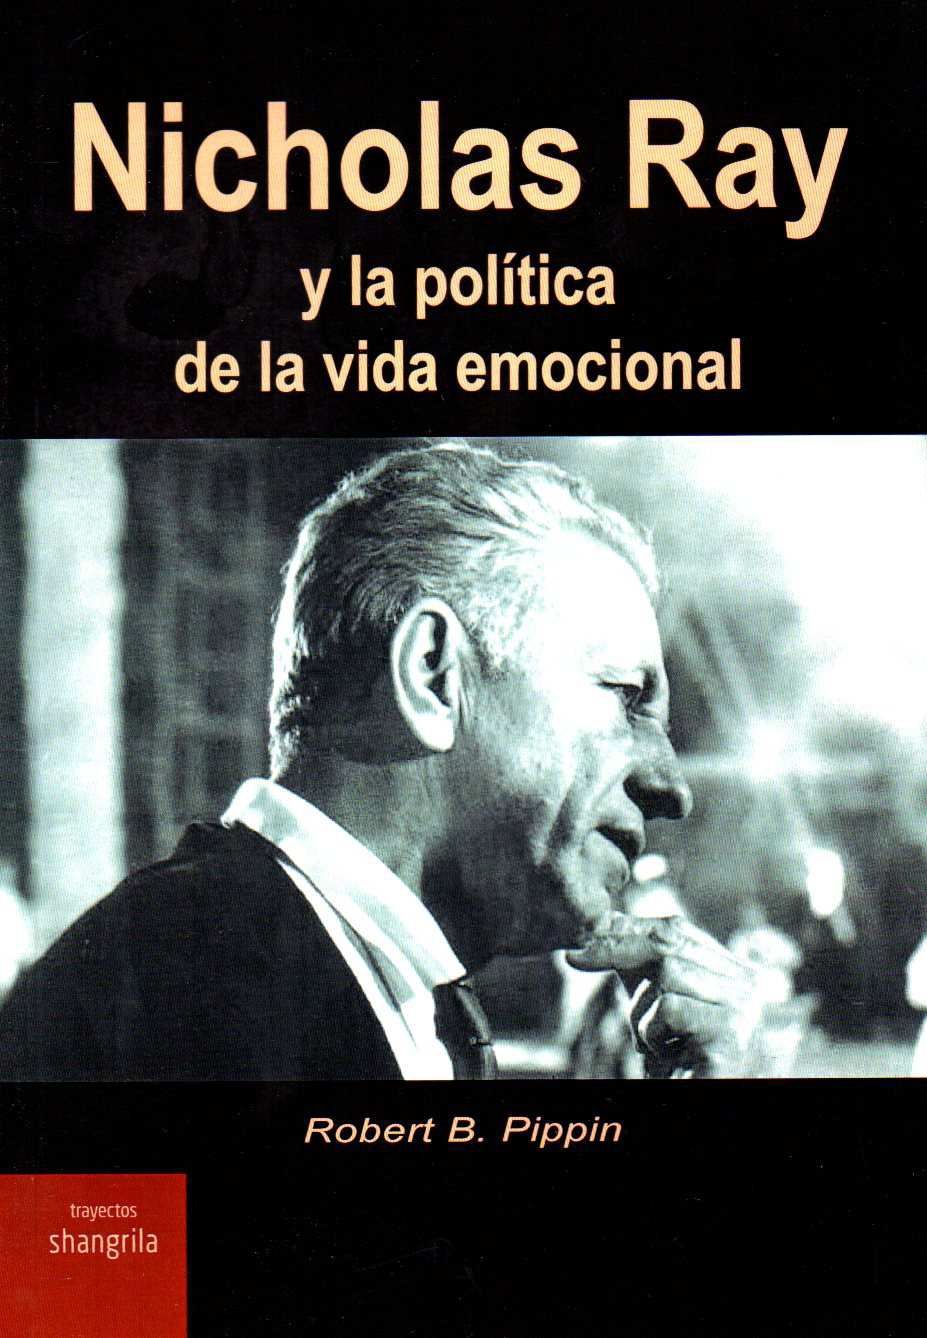 Nicholas Ray y la política de la vida emocional